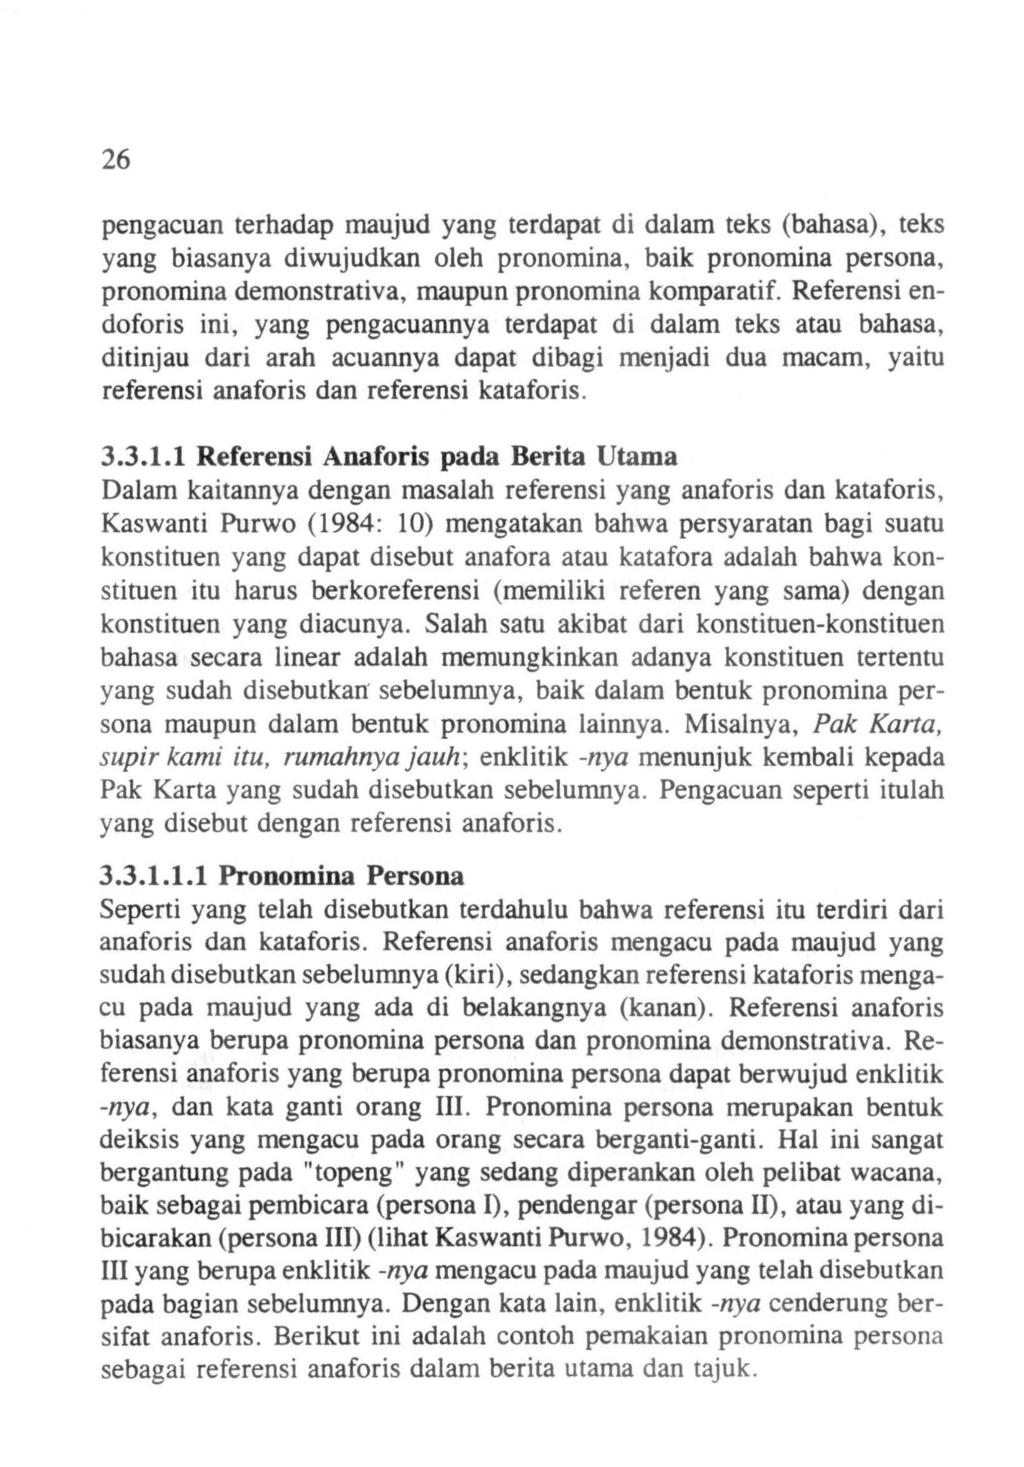 26 pengacuan terhadap maujud yang terdapat di dalam teks (bahasa), teks yang biasanya diwujudkan oleh pronomina, baik pronornina persona, pronornina demonstrativa, maupun pronornina komparatif.